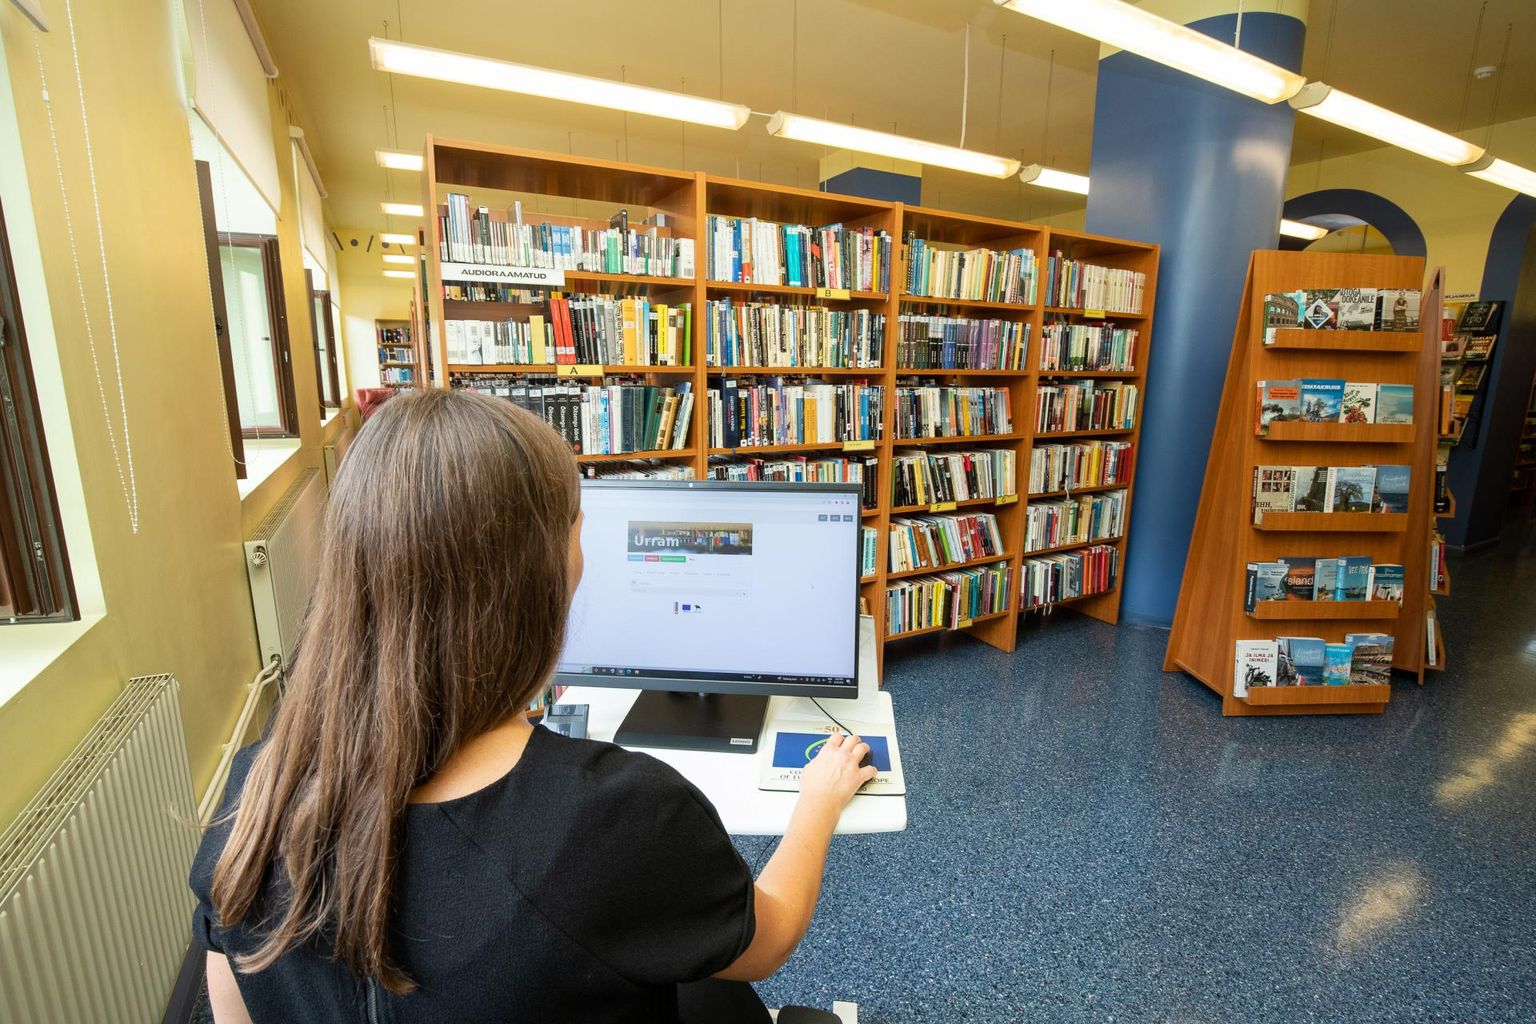 Raamatukoguprogrammi Urram rike tegi Lääne-Virumaa keskraamatukogu lugejate ja töötajate elu kibedaks.